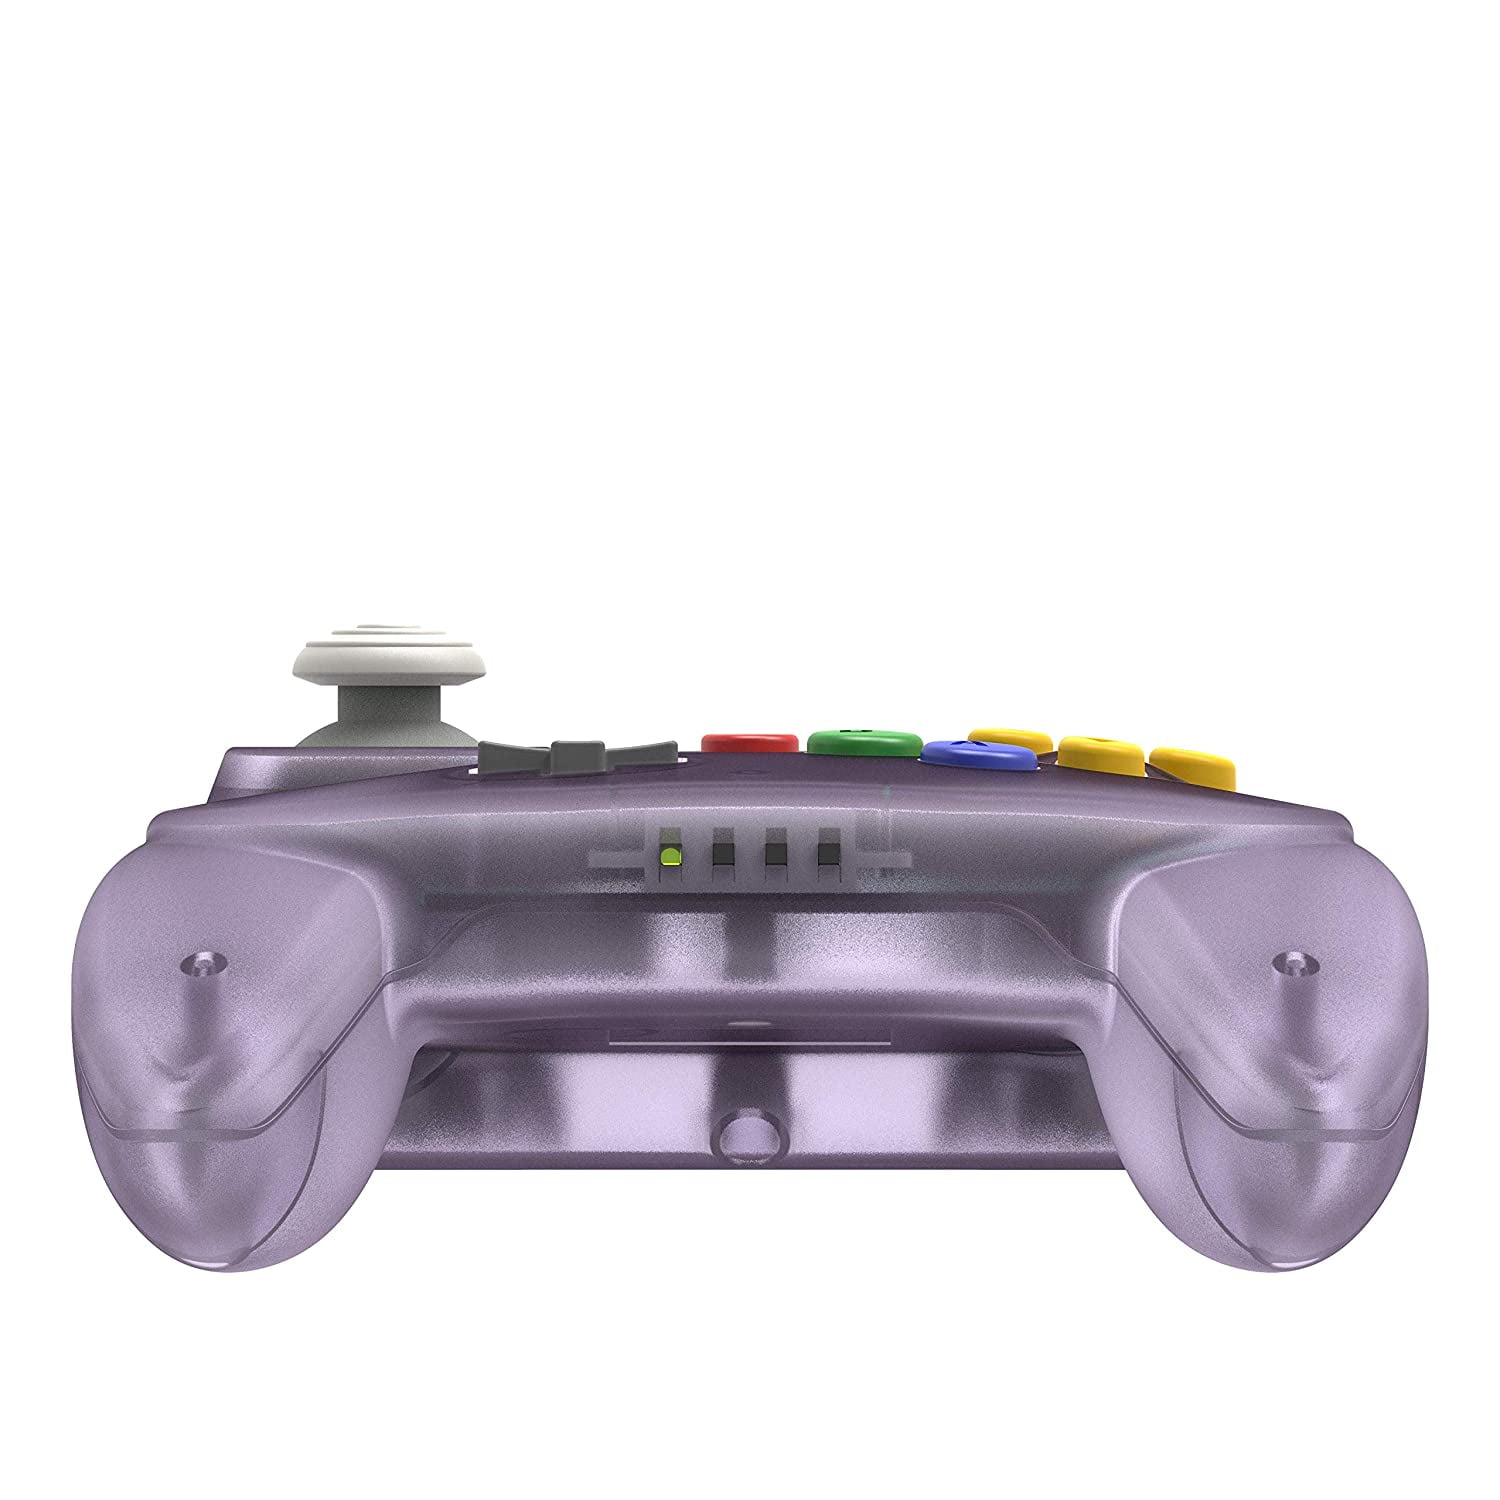 Nintendo 64 controller - Hardware - Nintendo Official Site